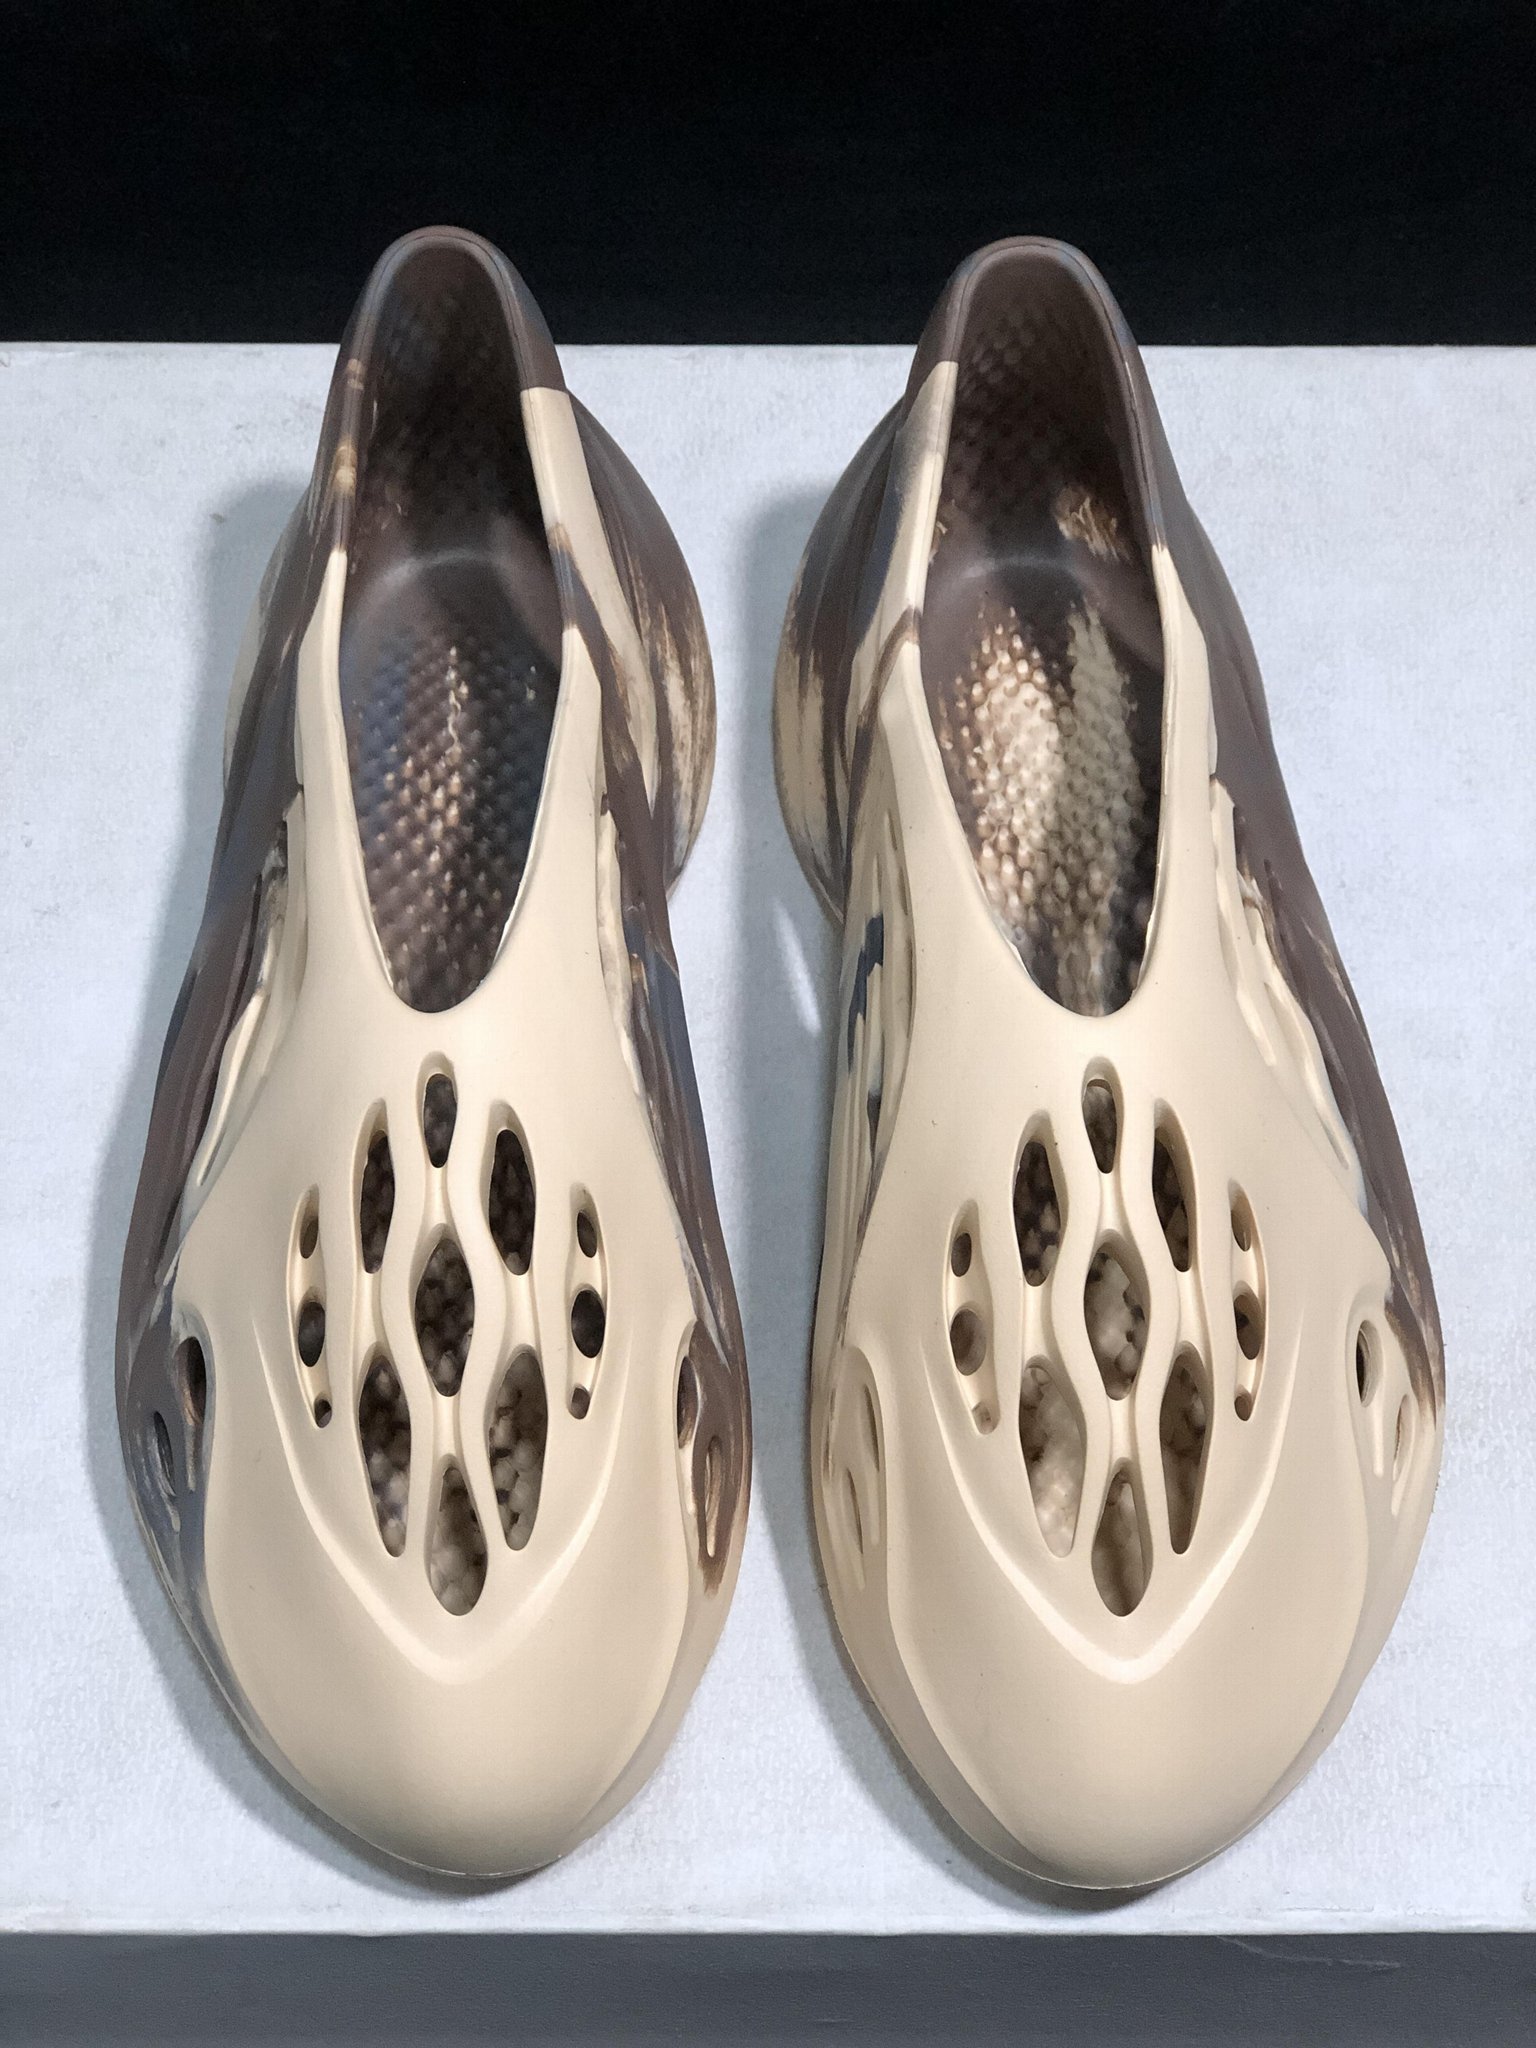        originals Yeezy Foam Runner MX Cream Clay sandal Yeezy women sandals  2